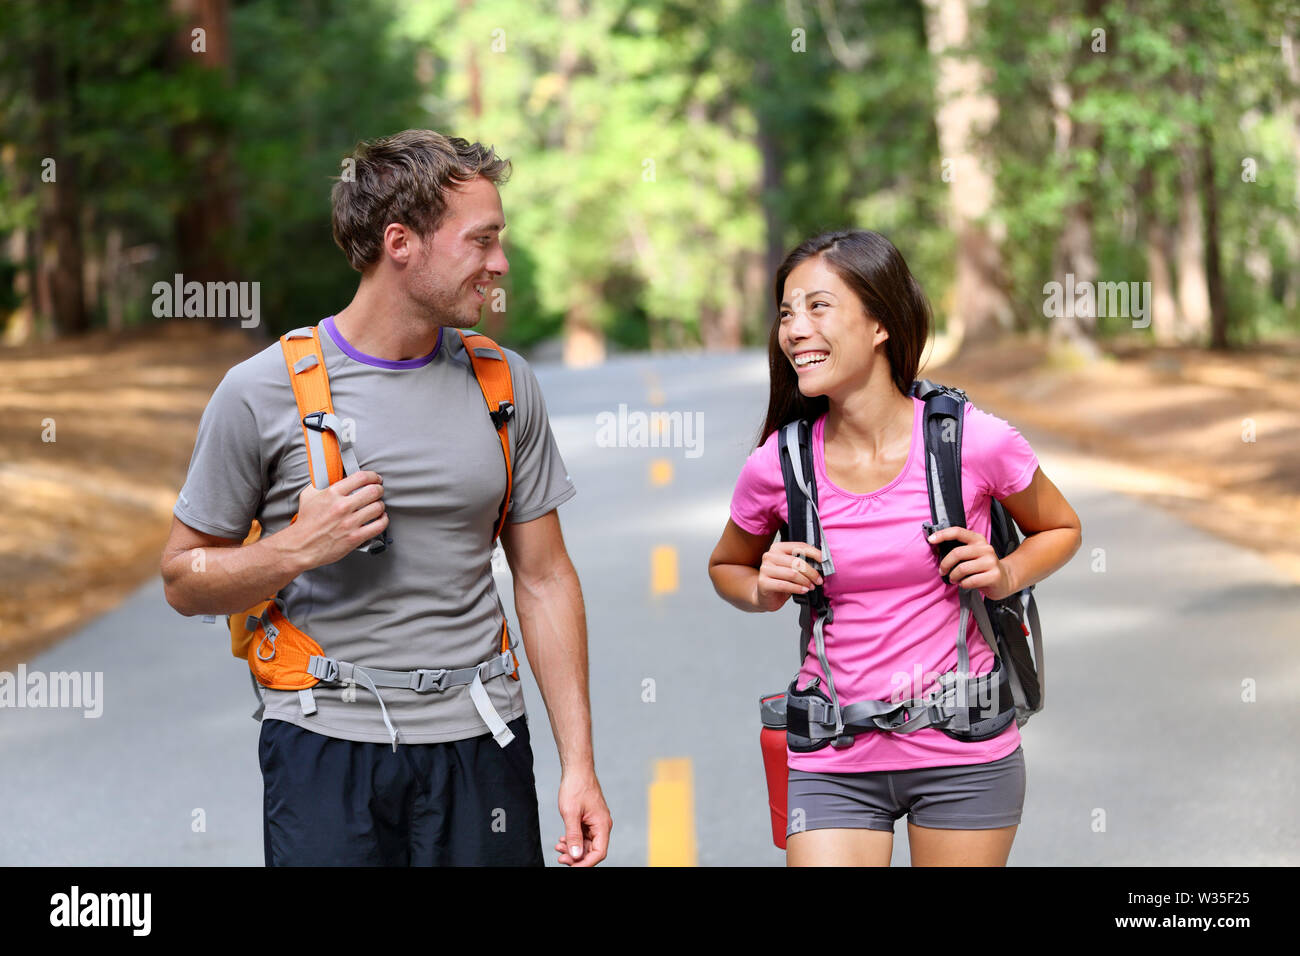 Heureux couple de randonneurs randonnées parler ensemble, joyeux et frais. Jeune couple multiracial active dans l'activité de plein air randonnée pédestre dans la région de Yosemite National Park, California, USA. Asian Woman, man. Banque D'Images